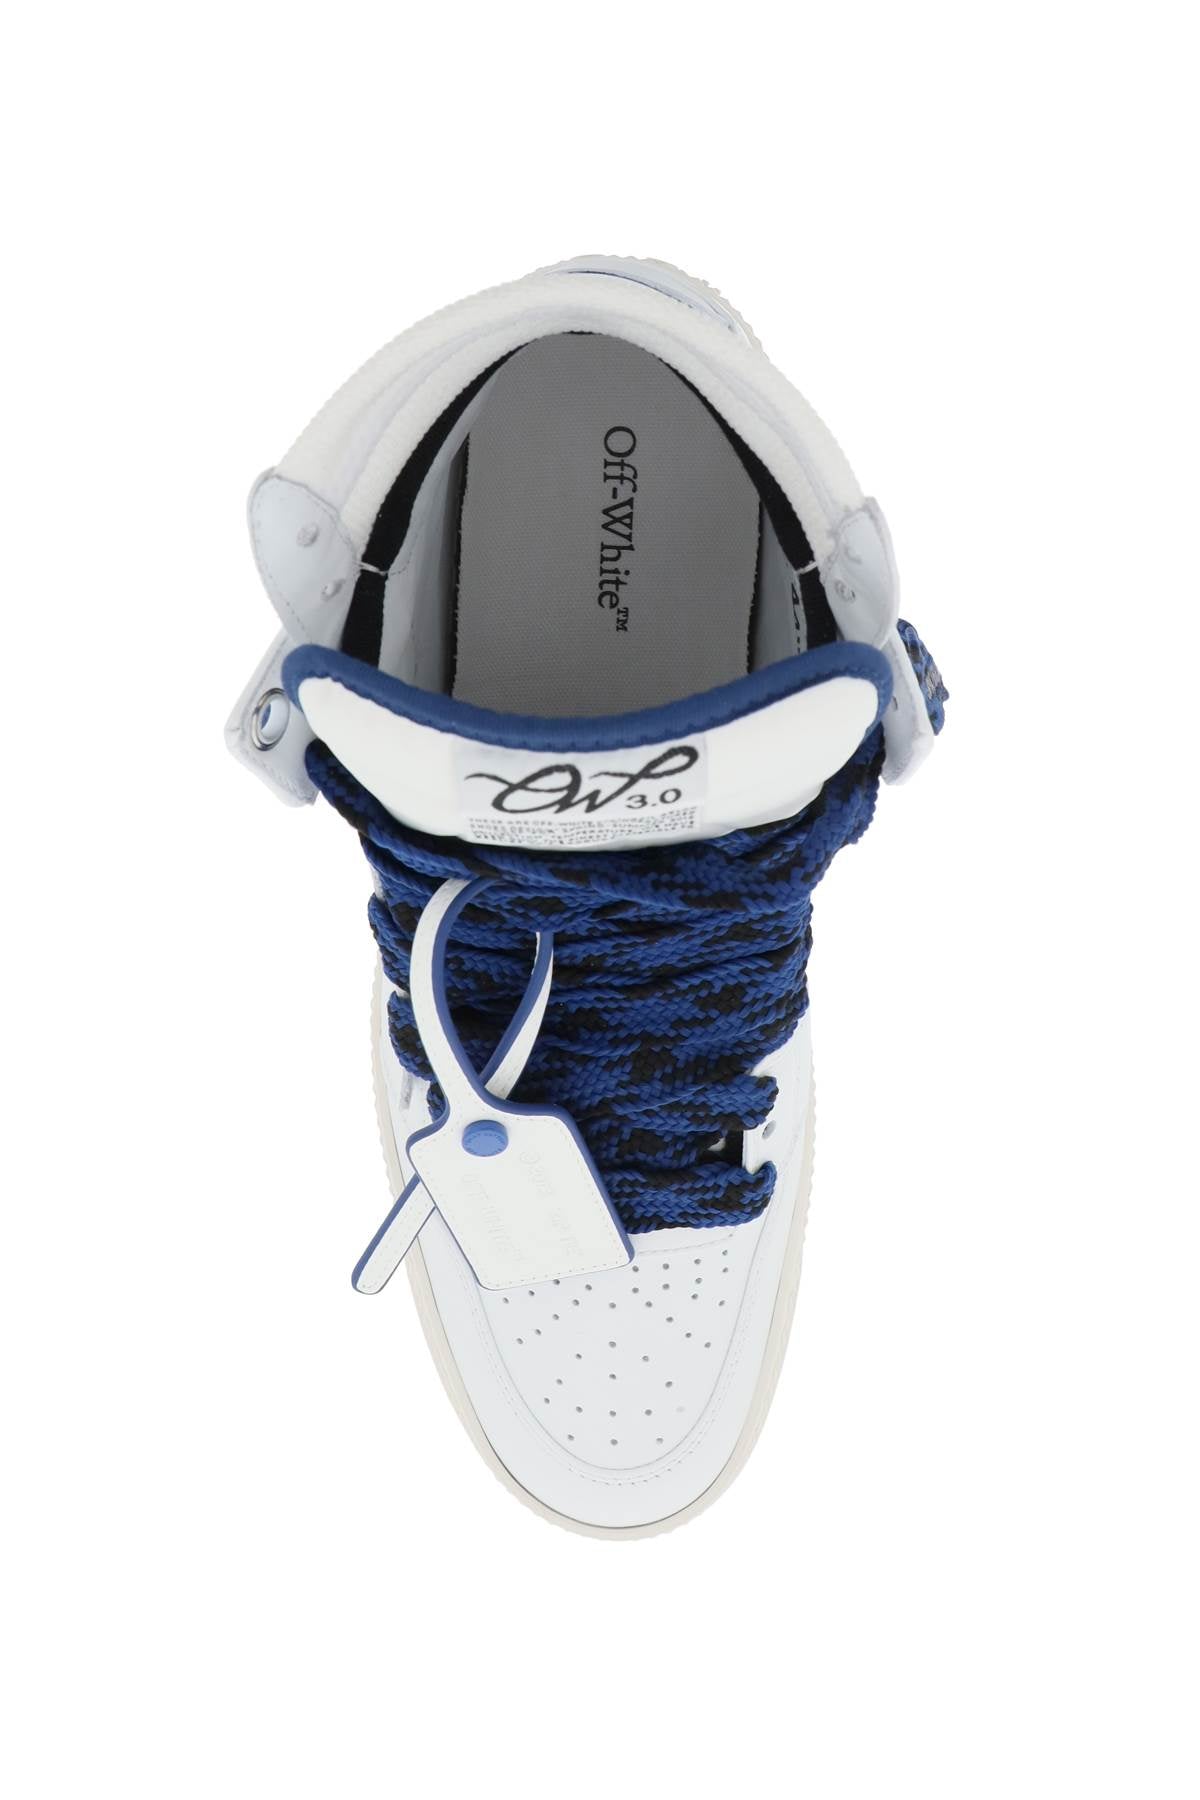 Giày Sneaker cao cấp da trắng và xanh dành cho nam giới